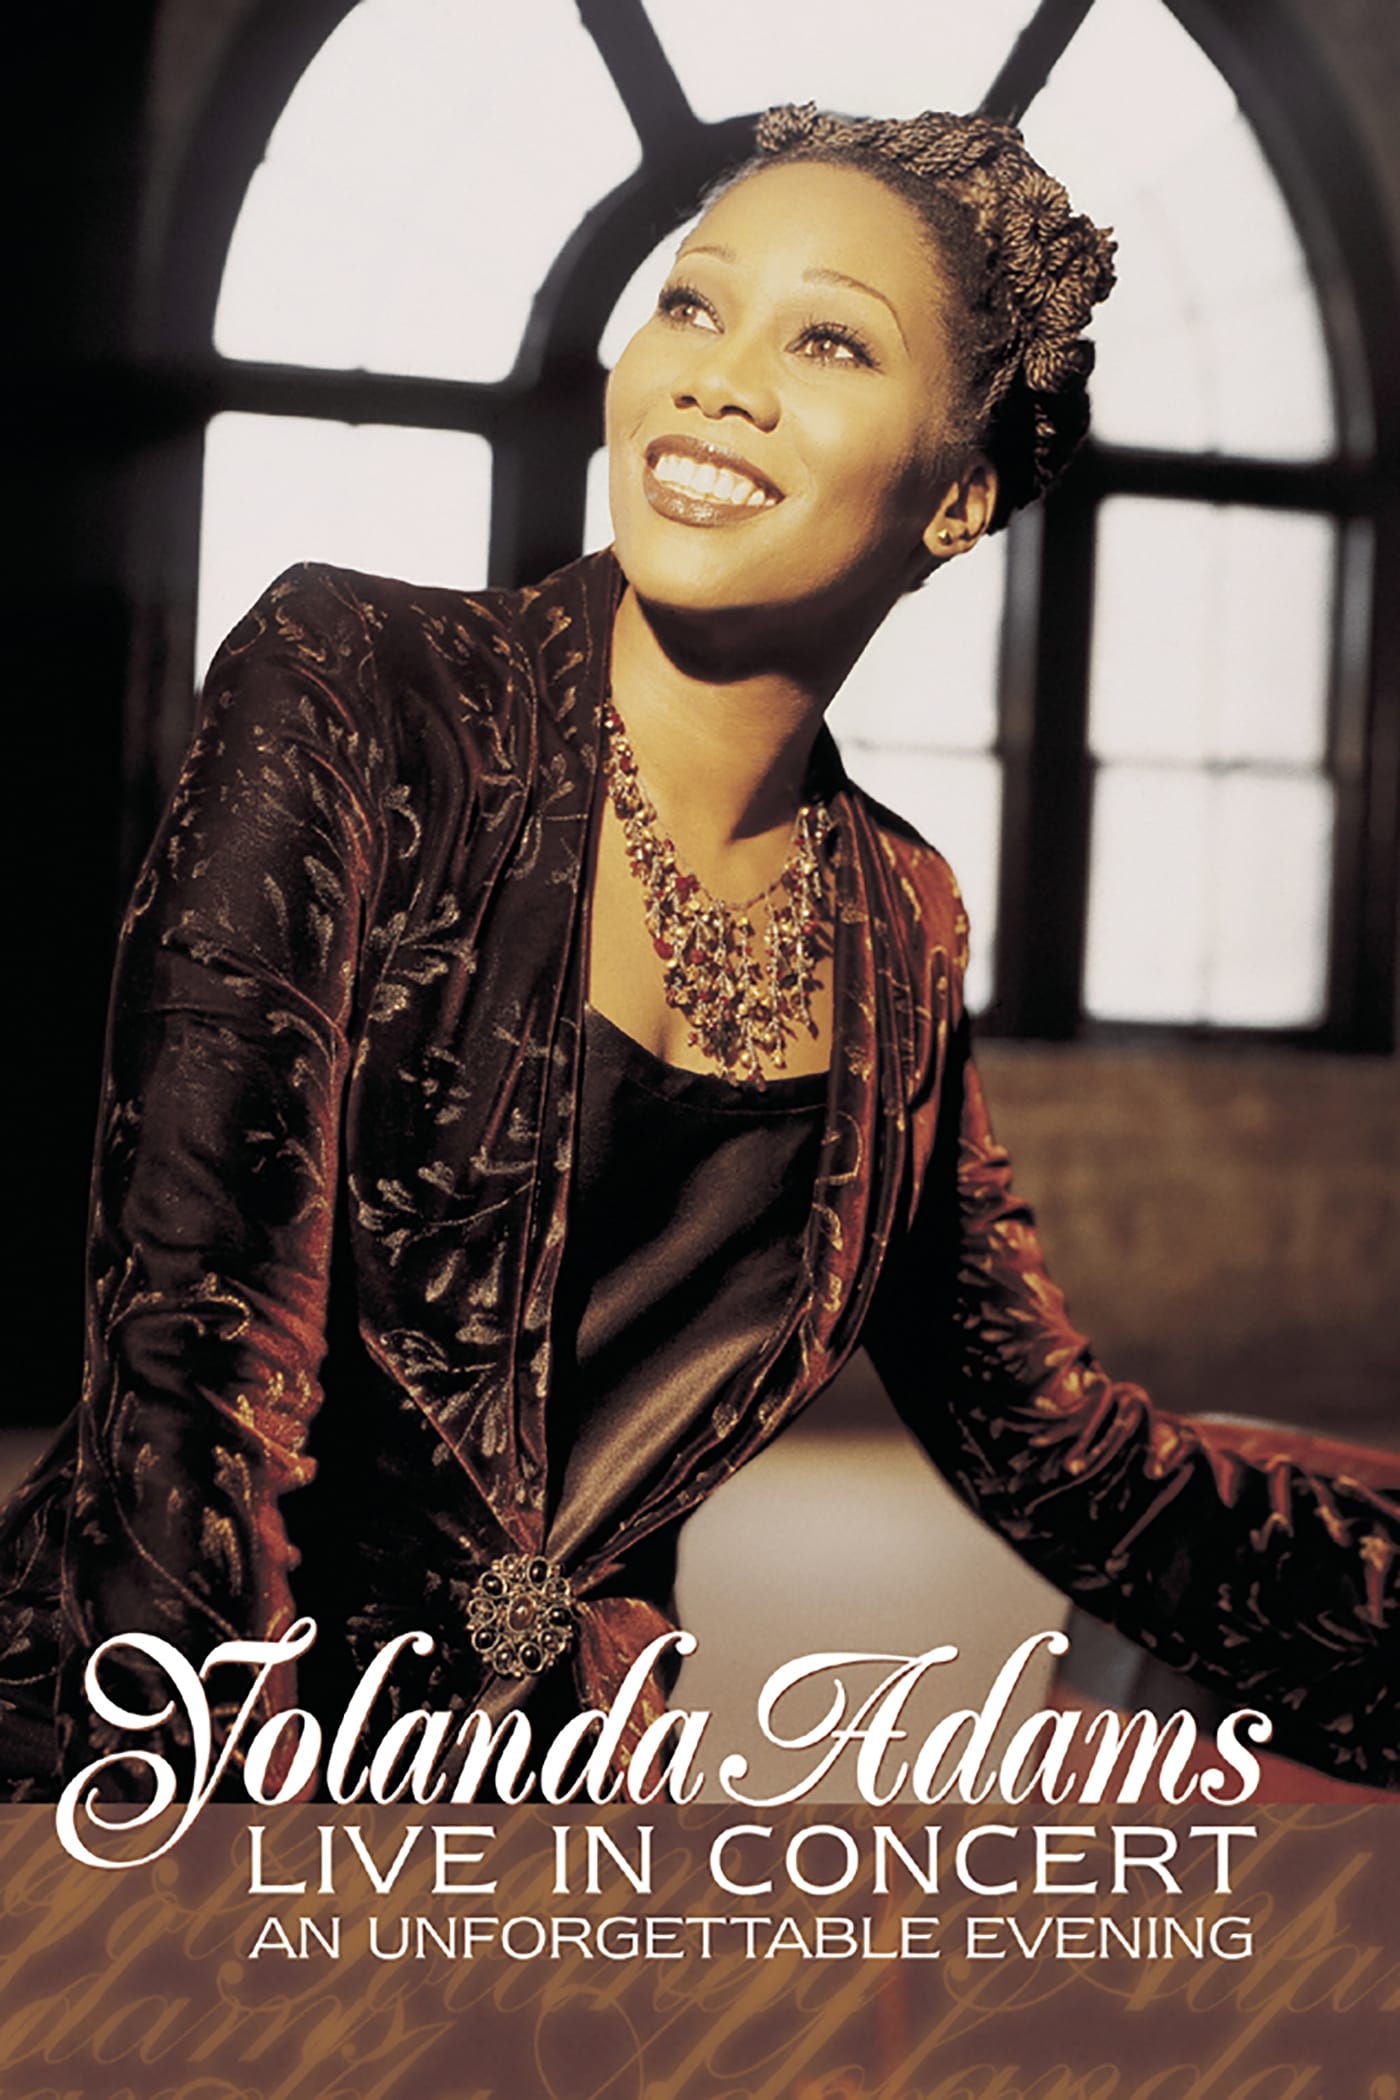 Yolanda Adams: Live In Concert...An Unforgettable Evening